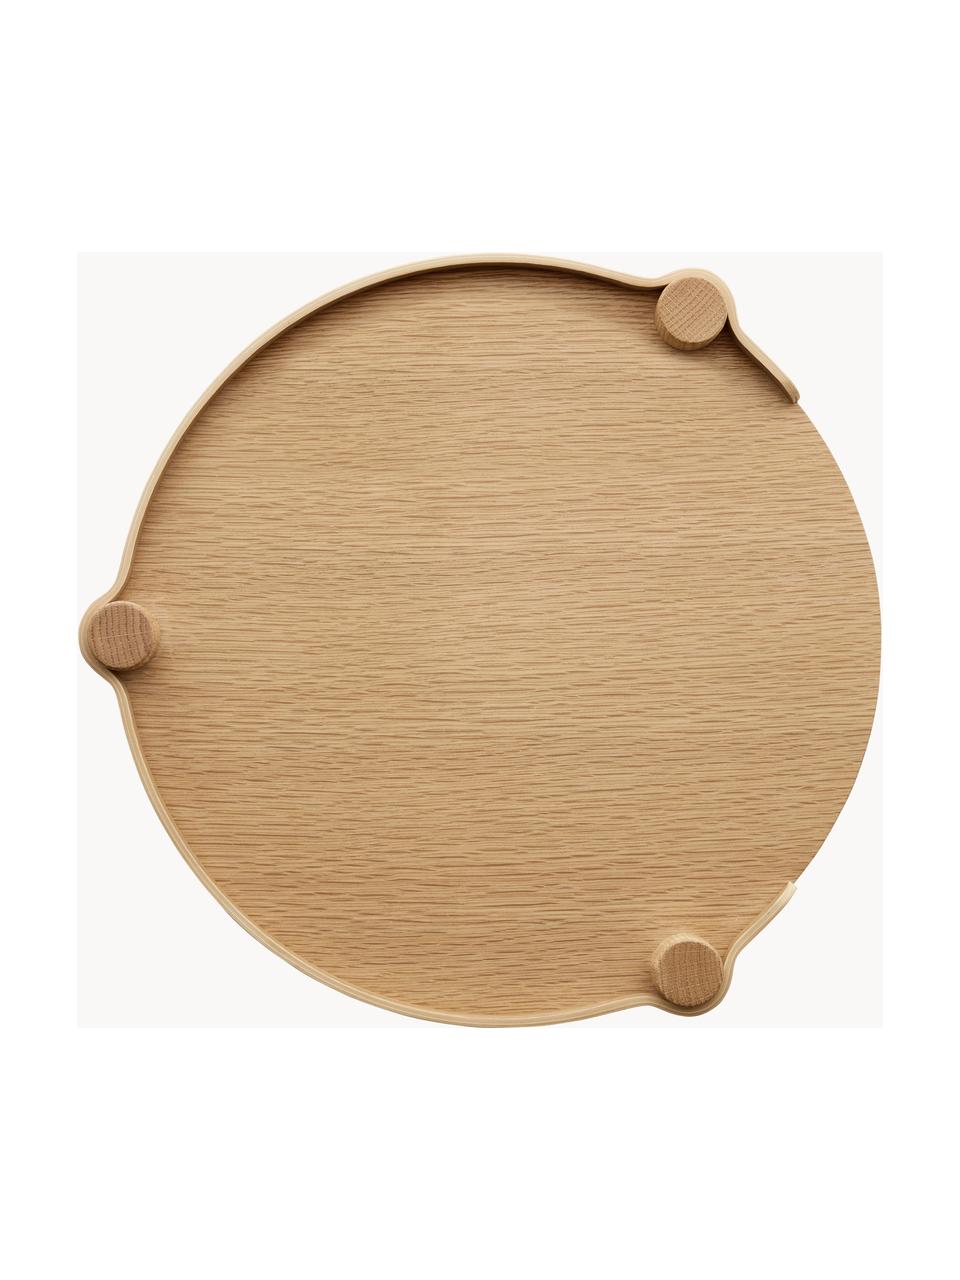 Okrągły stolik pomocniczy z drewna dębowego Woody, Drewno dębowe

Ten produkt jest wykonany z drewna pochodzącego ze zrównoważonych upraw, które posiada certyfikat FSC®, Drewno dębowe, Ø 45 x W 44 cm